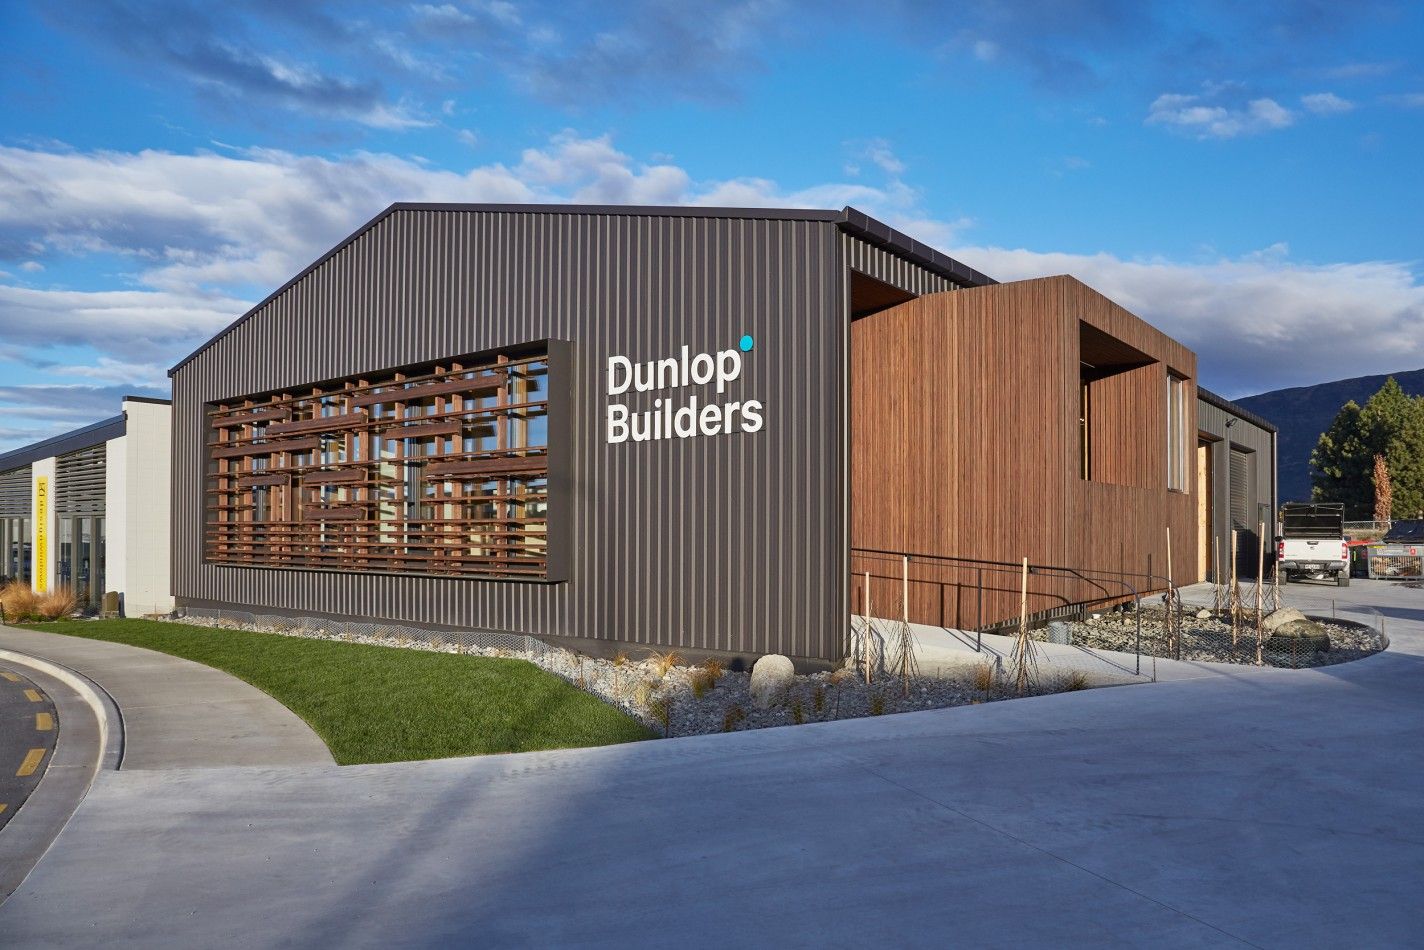 The Dunlop Hub